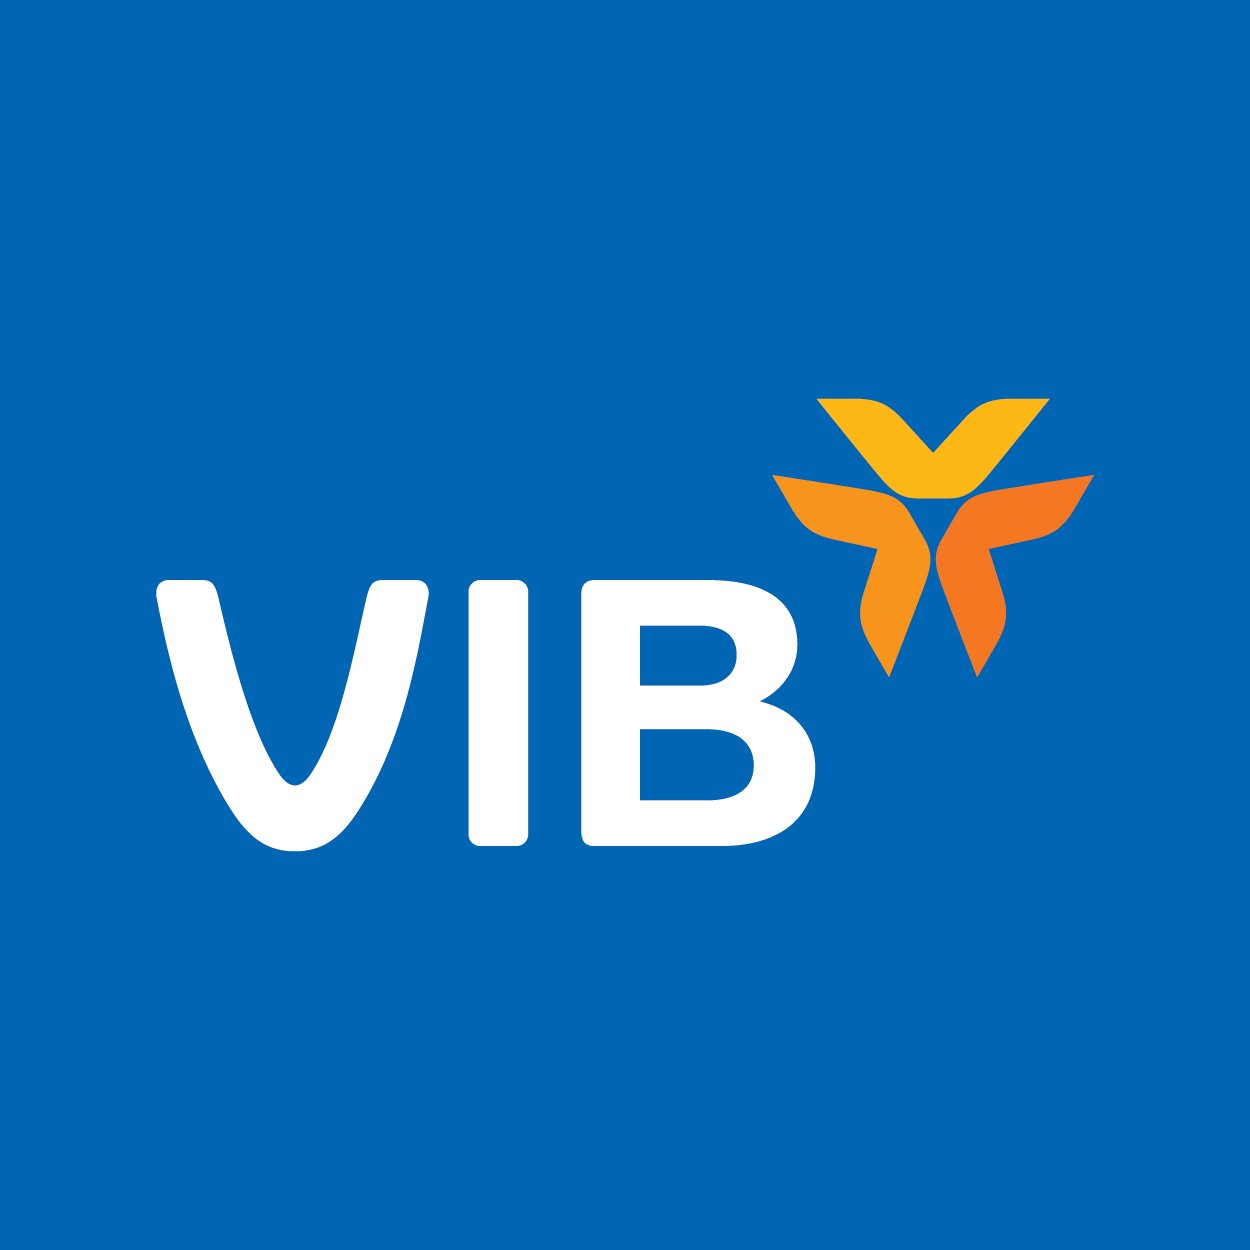 Tải logo VIB (Ngân hàng TMCP Quốc tế Việt Nam) file CDR, AI, SVG, EPS, PNG,  JPG, PDF